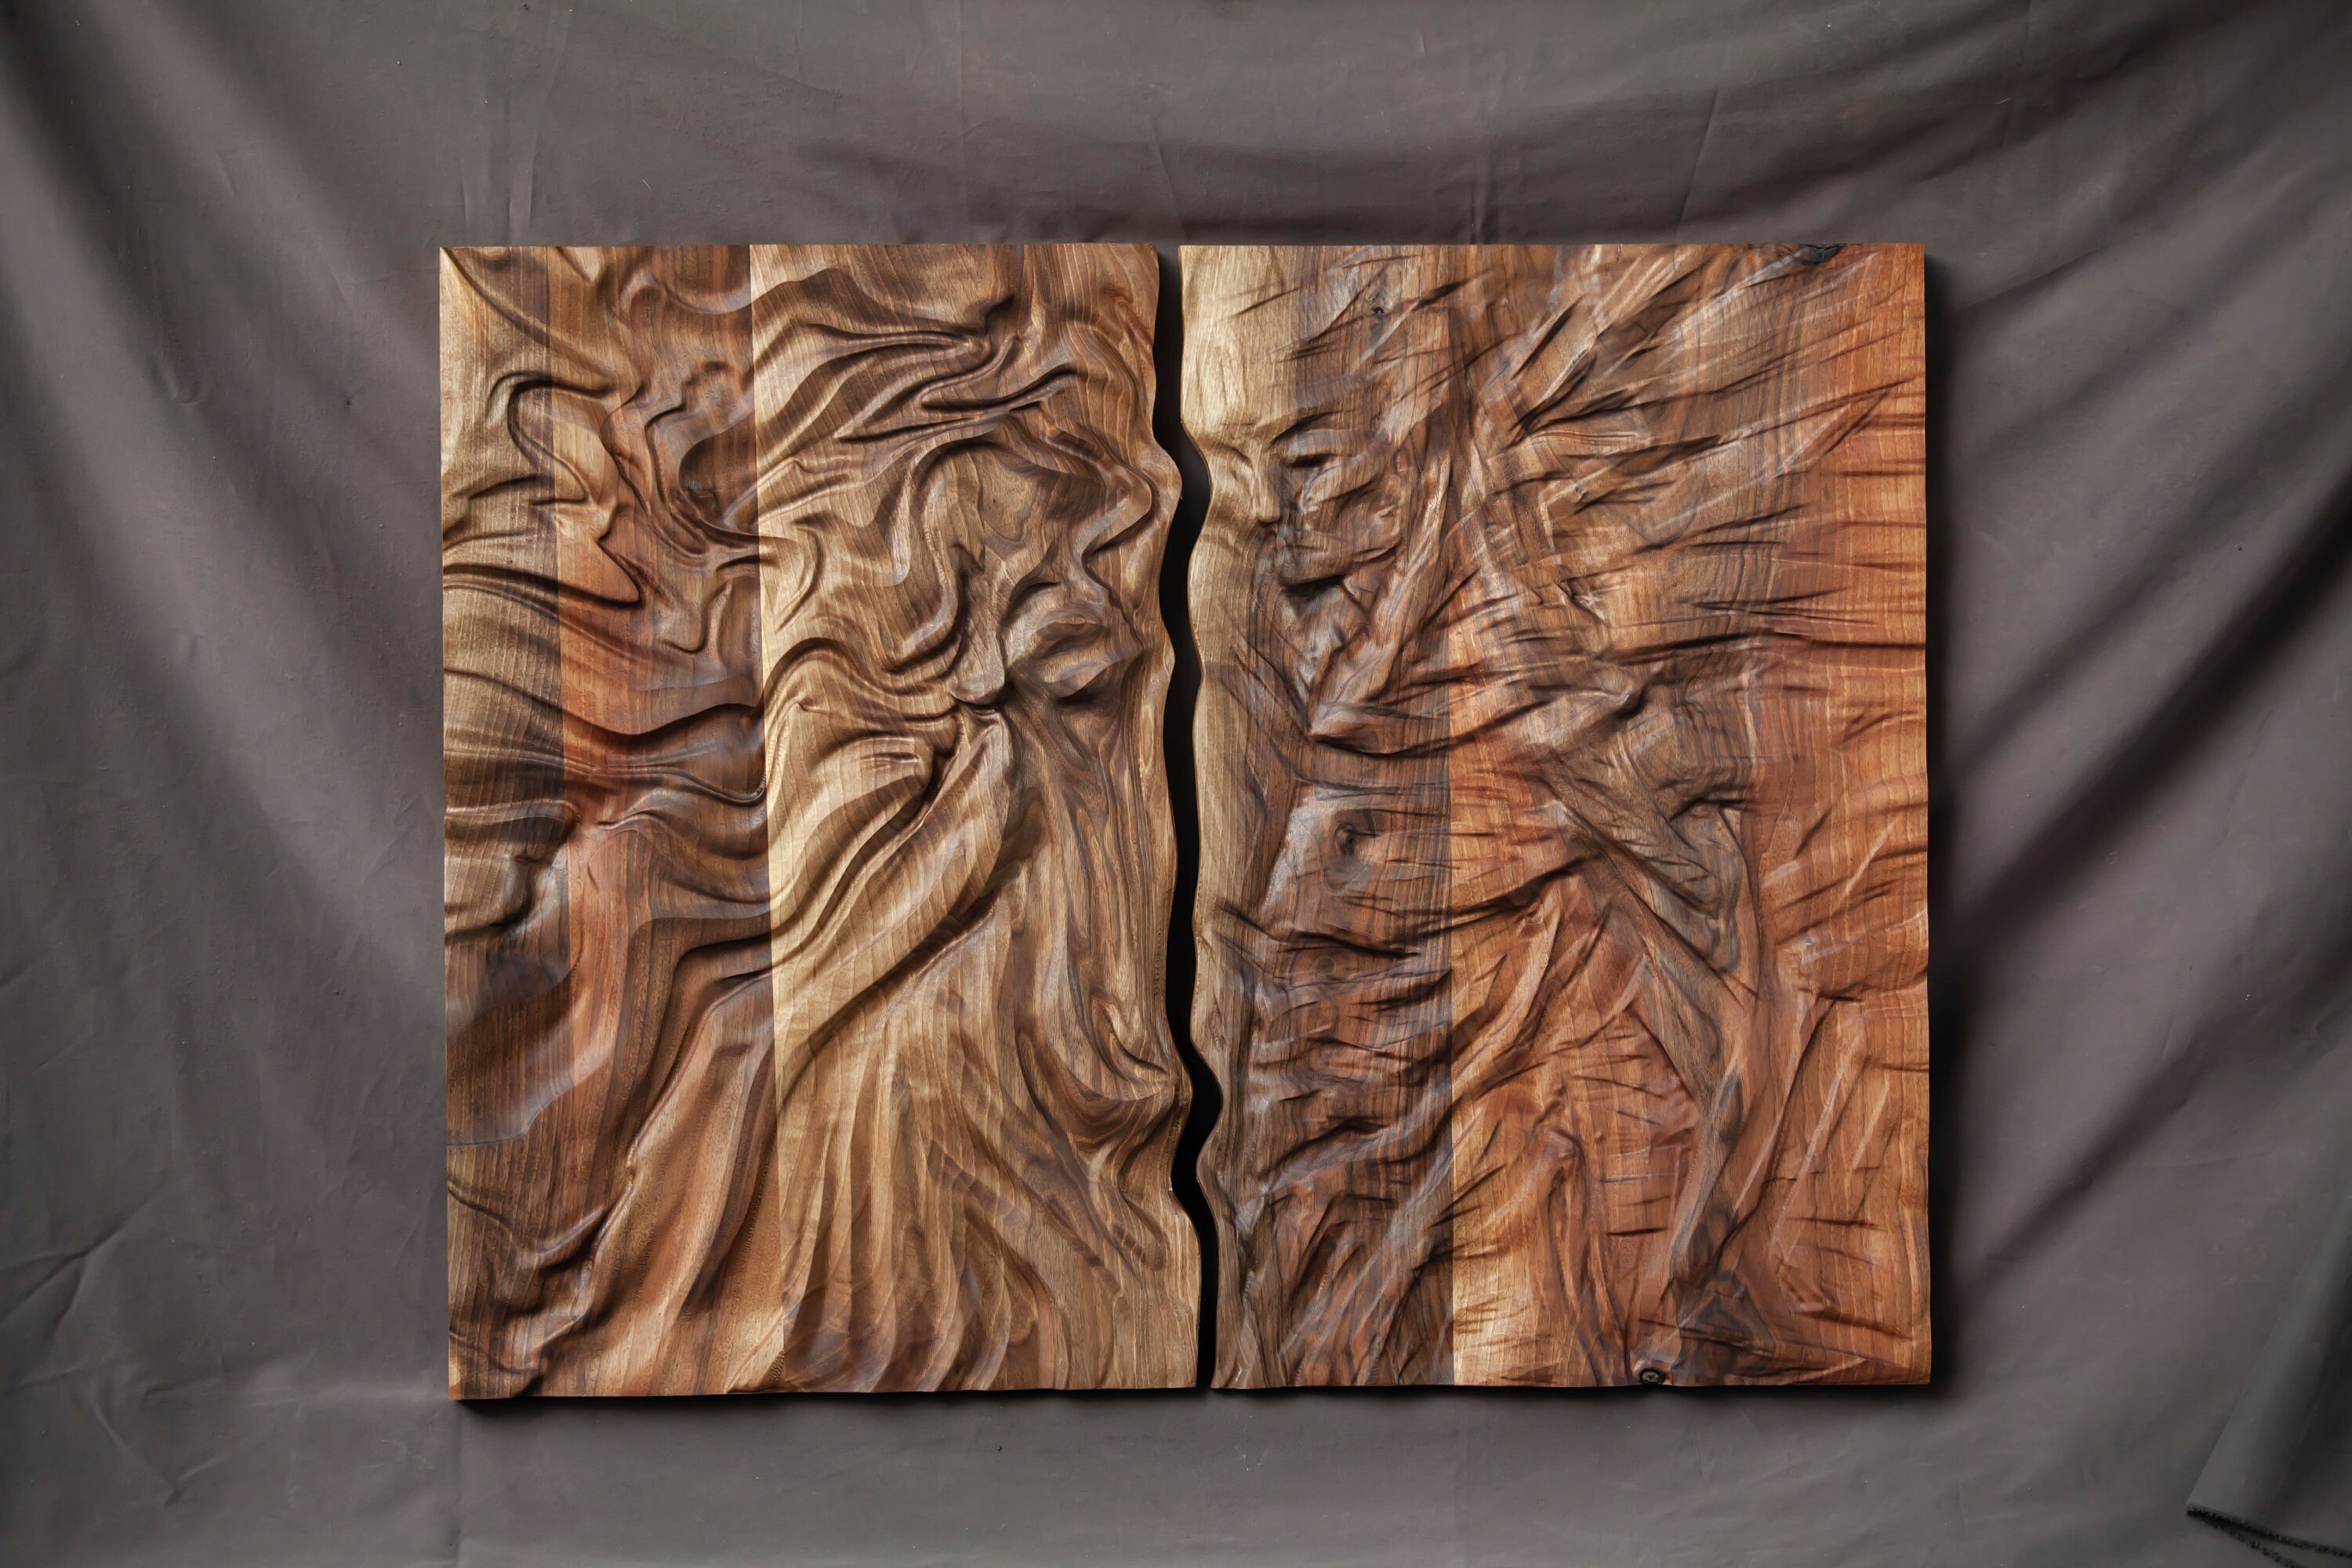 Large Size Wood Sculpture, Wood Wall Art, Modern Organic Relief Sculpture 